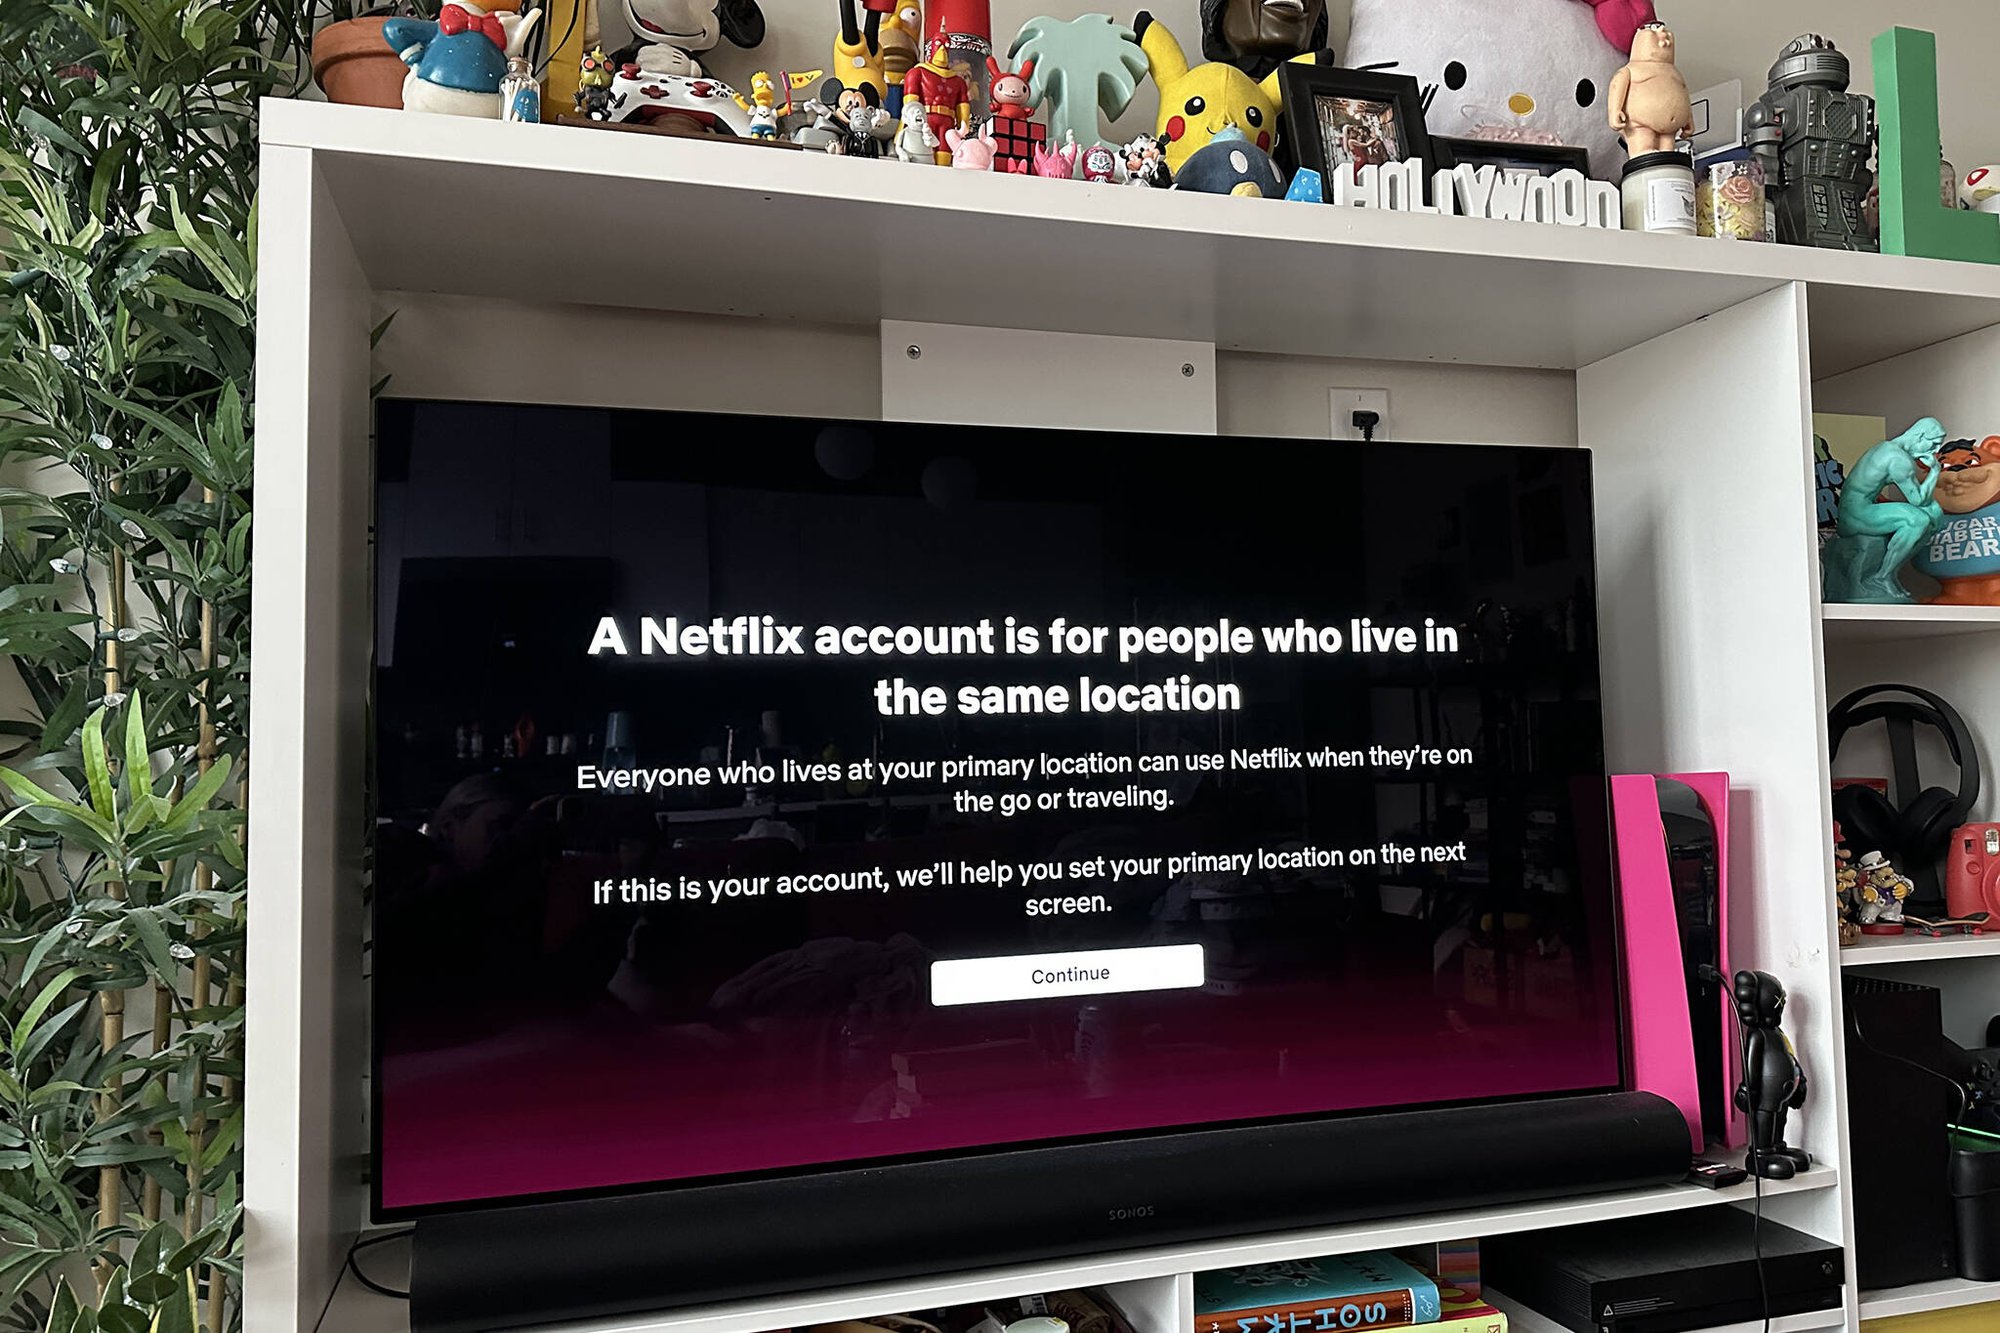 Netflix bị phản ứng khi thay đổi chính sách chia sẻ mật khẩu - Ảnh 1.